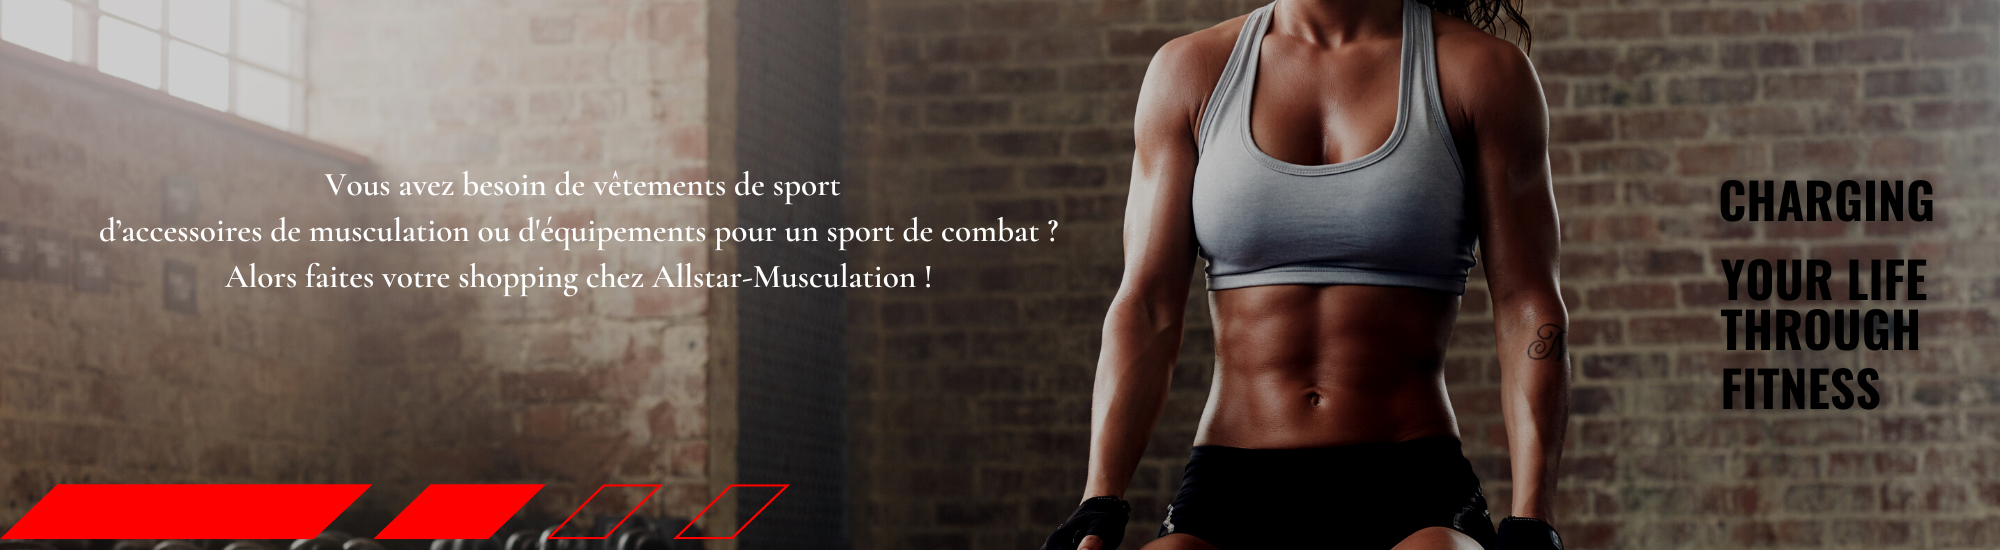 Choisissez le meilleur appareil de musculation complet pour des résultats  exceptionnels - Light In Fitness